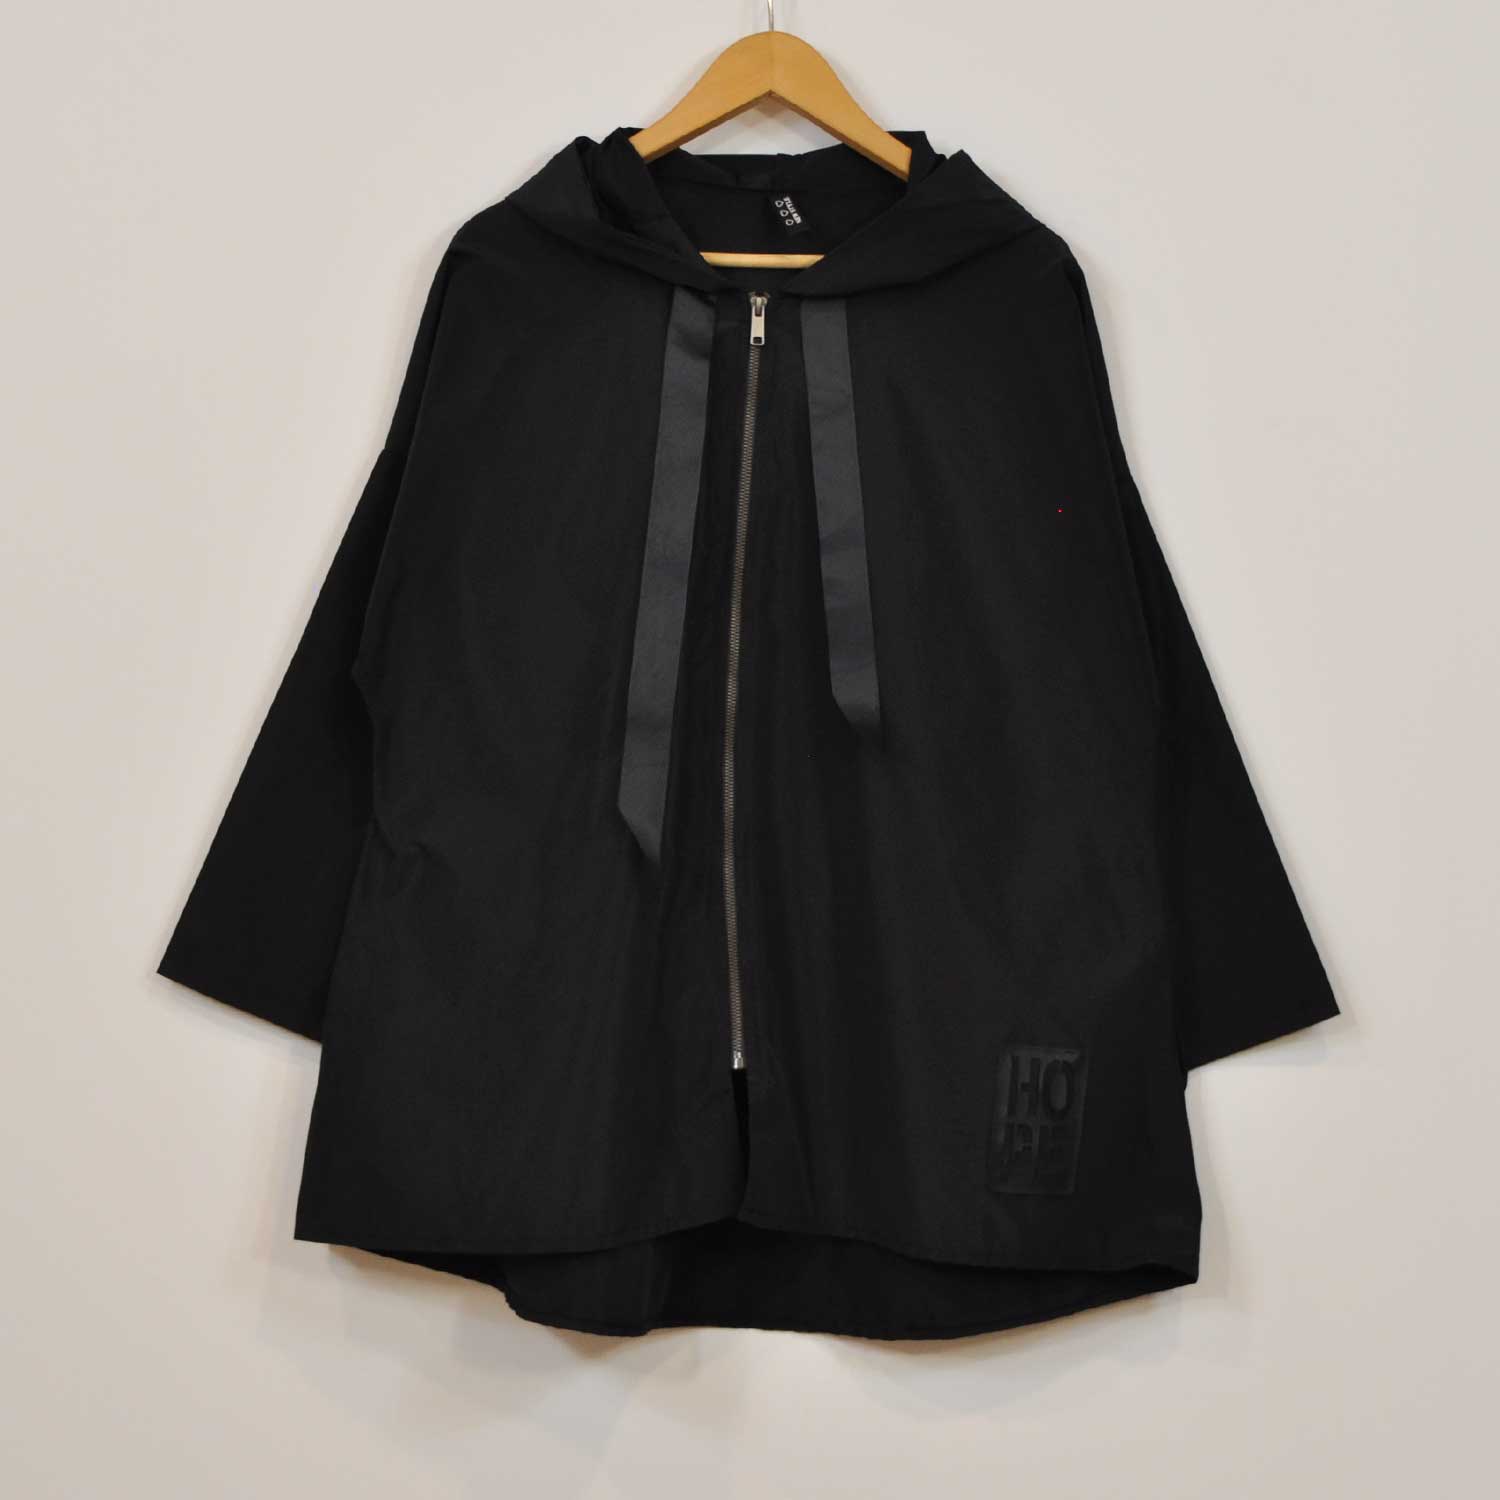 Black windbreaker jacket